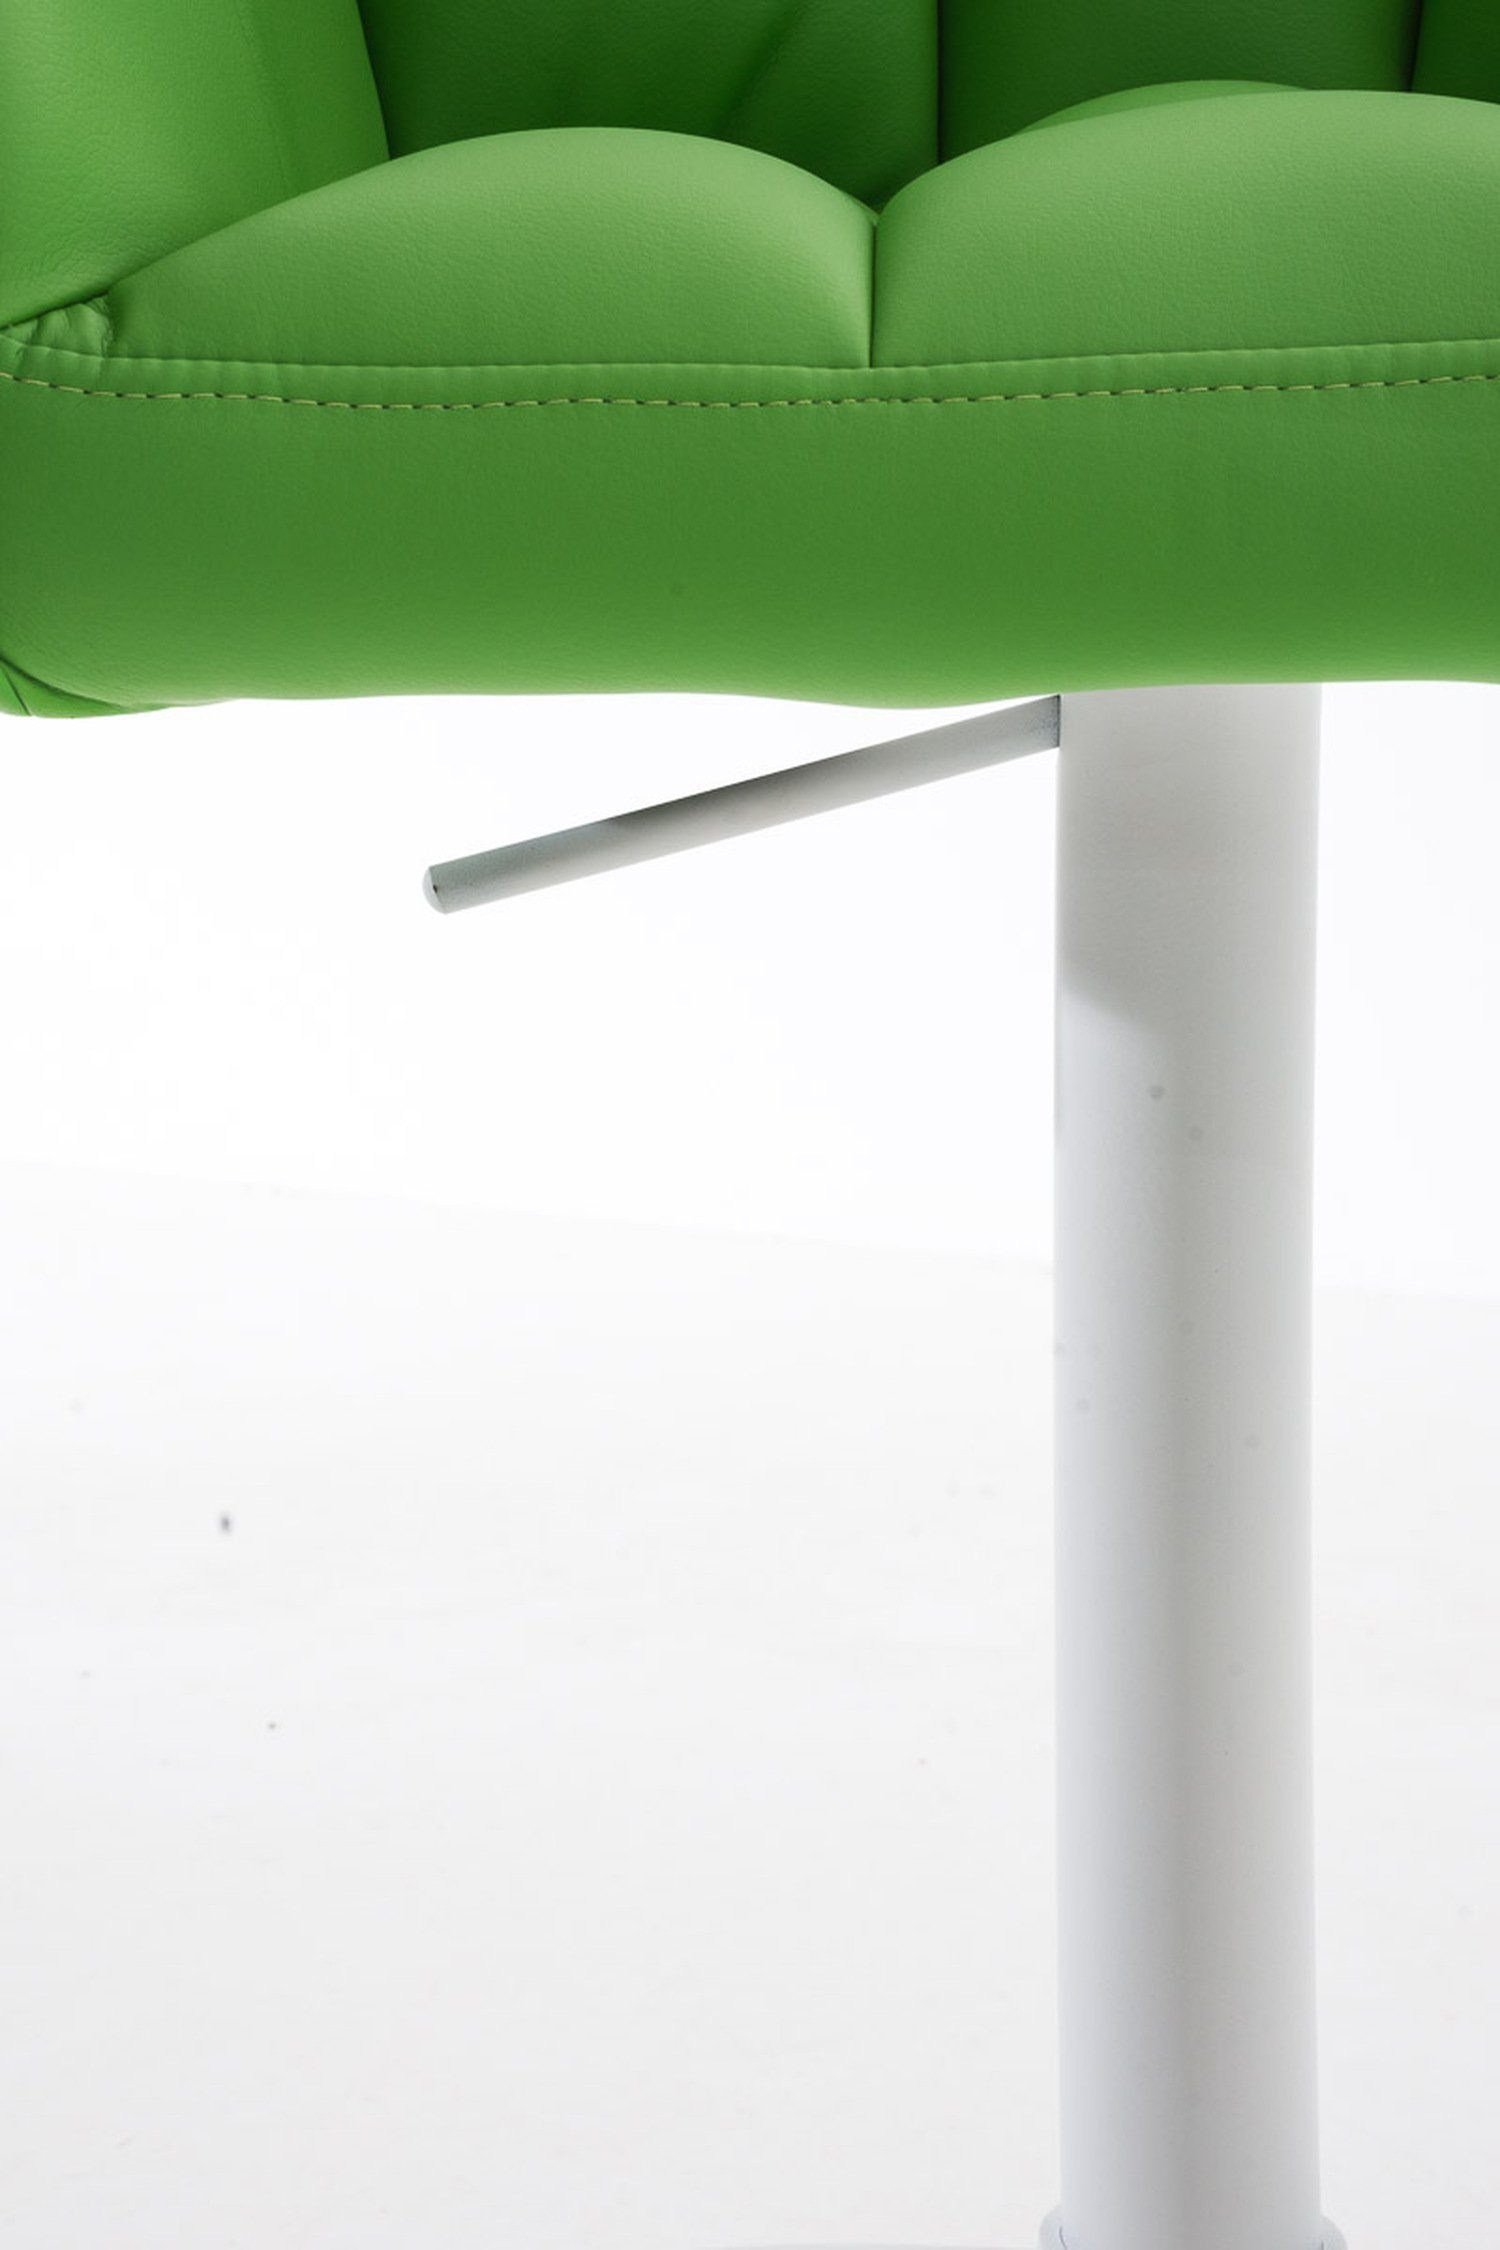 TPFLiving Barhocker und drehbar Damaso Rückenlehne (mit Fußstütze Hocker weiß Metall 360° Kunstleder - - Grün & Küche), Theke - für Sitzfläche